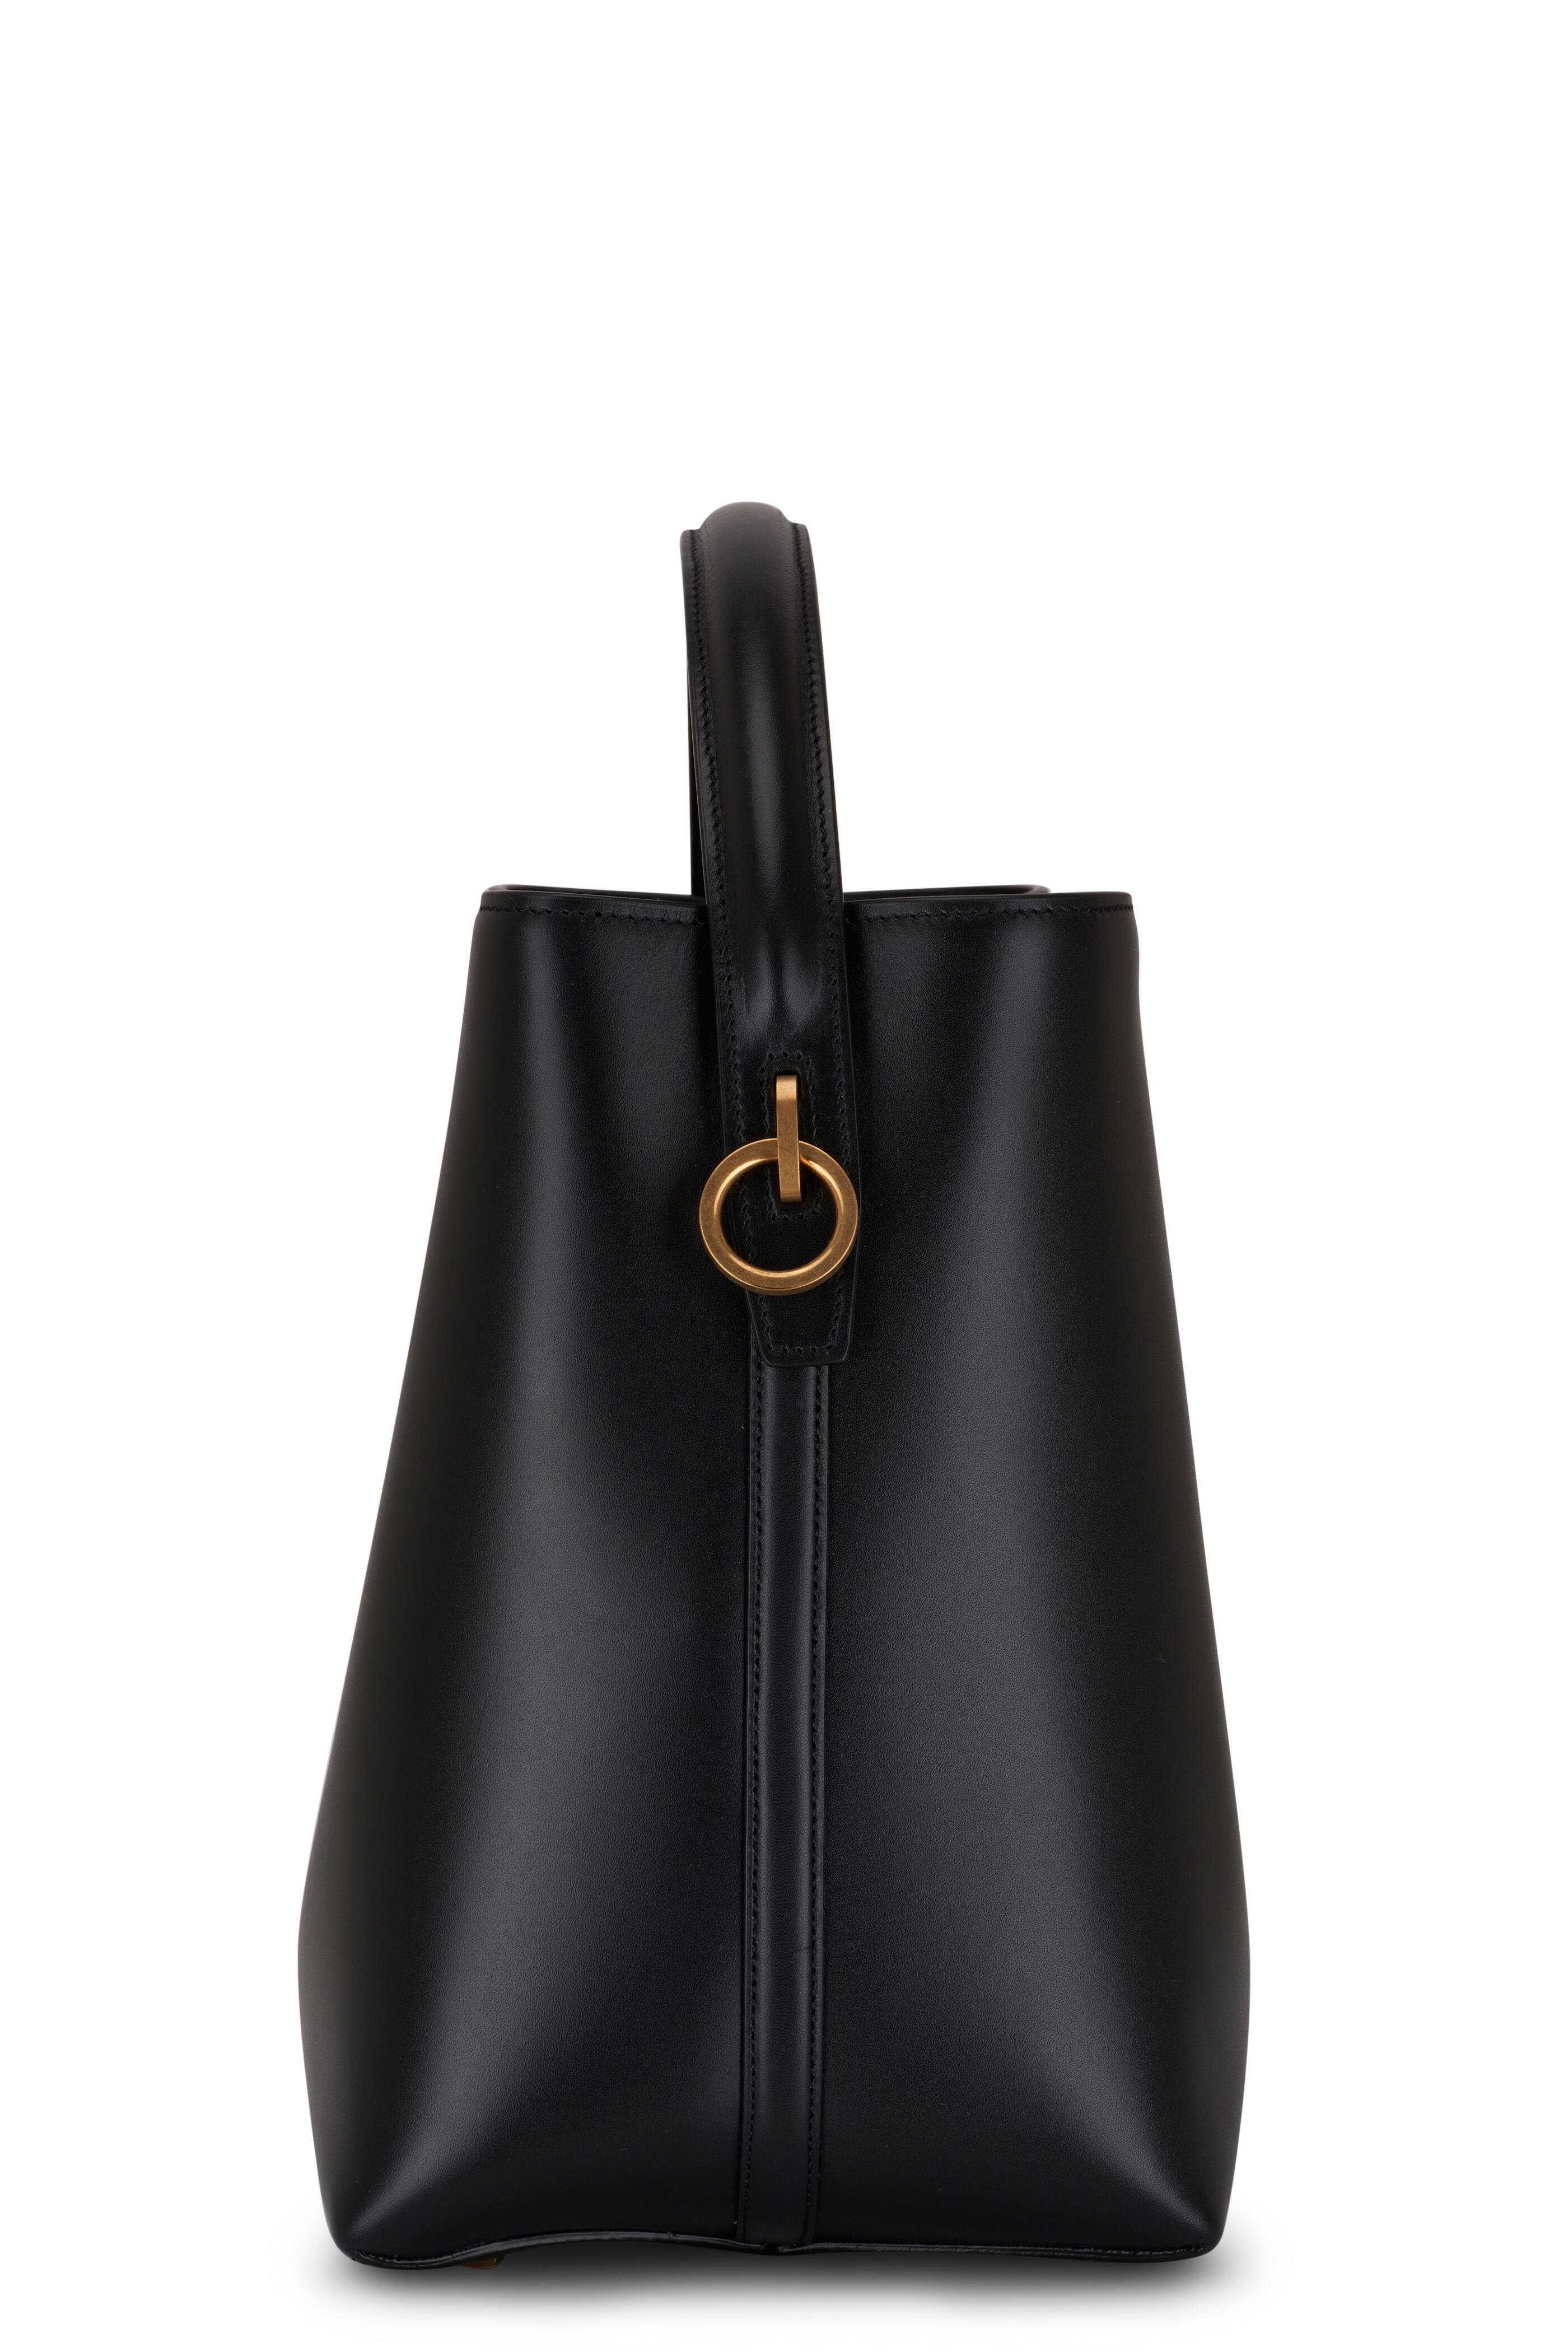 Saint Laurent Le 37 Leather Bucket Bag in Noir